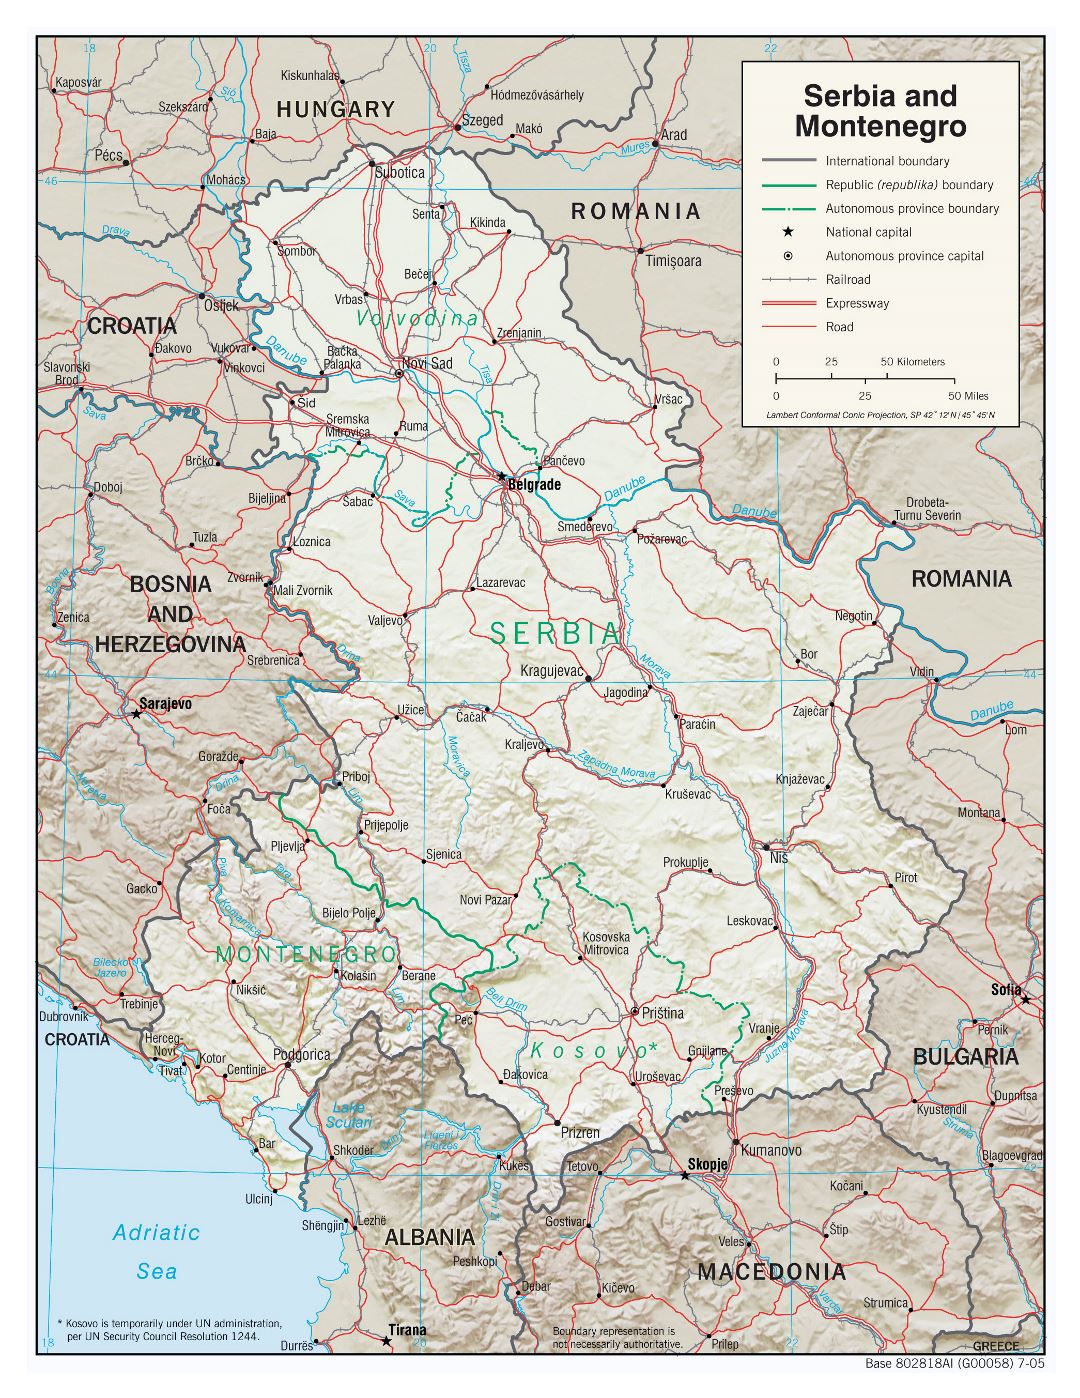 Grande detallado mapa político de Serbia y Montenegro con relieve, carreteras, ferrocarriles y ciudades importantes - 2005